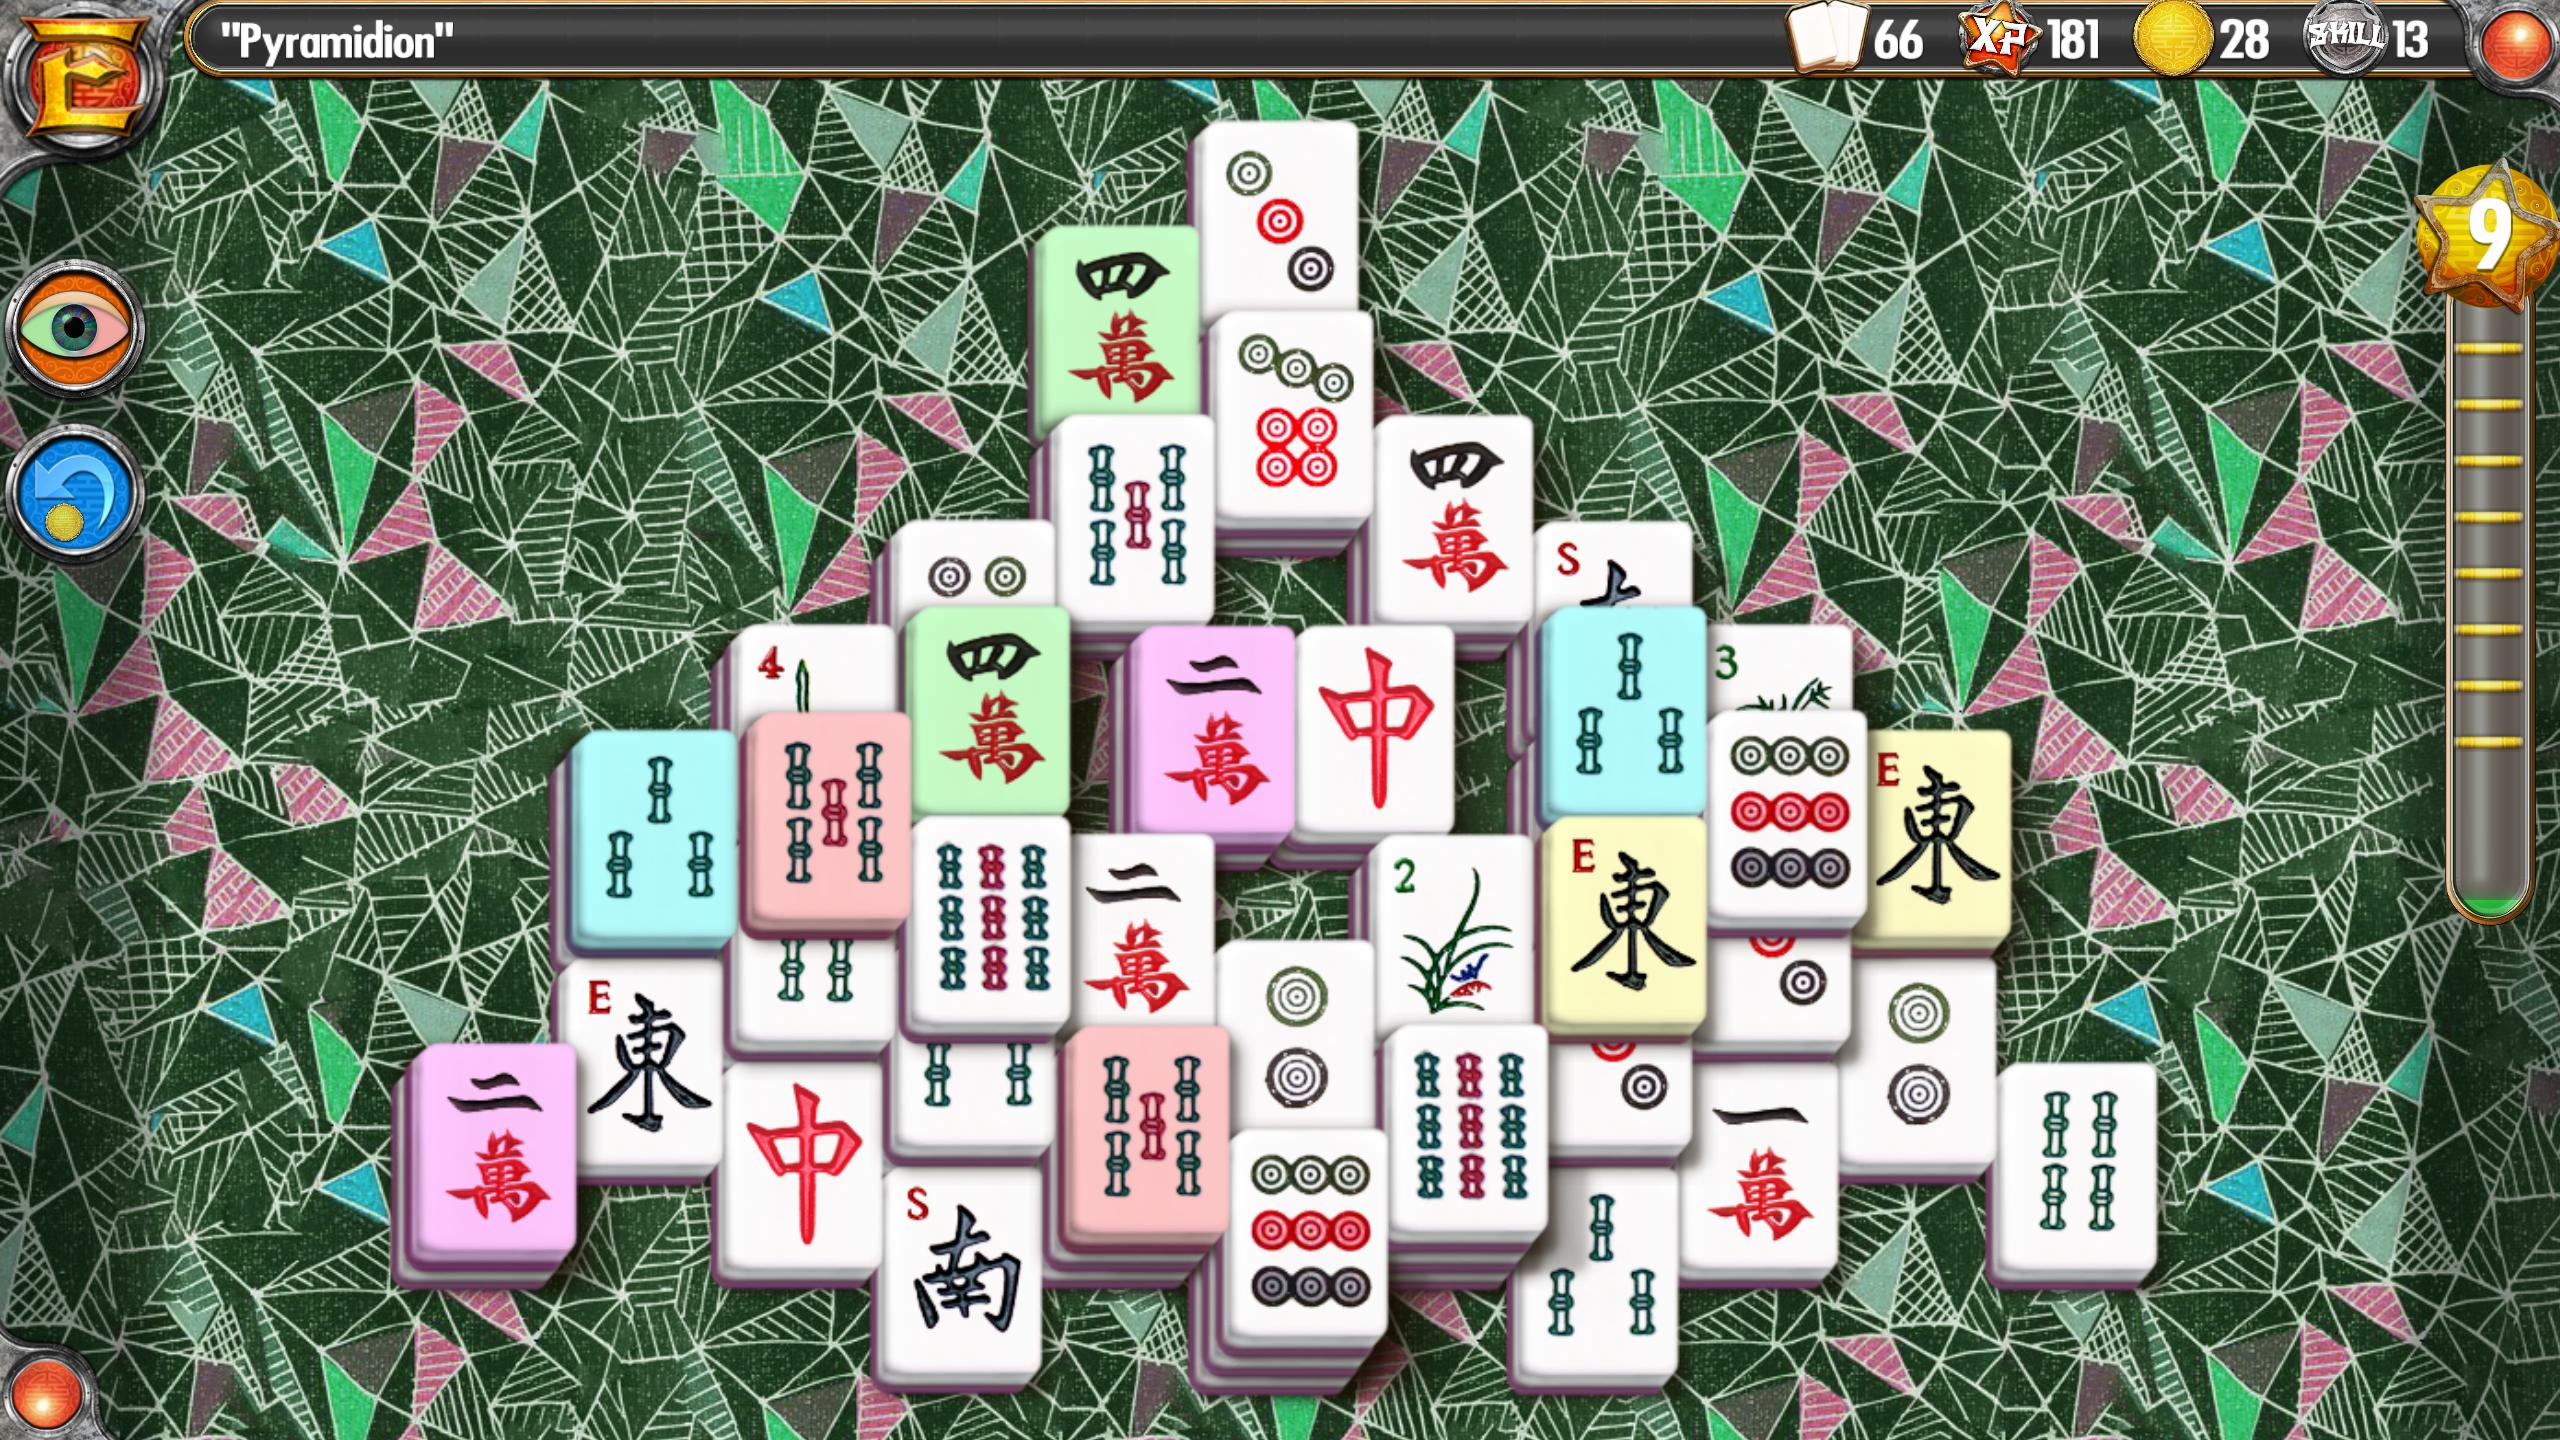 Vfl jyu маджонг играть. Маджонга. Игра Mahjong. Японский Маджонг. Японское Домино Маджонг.